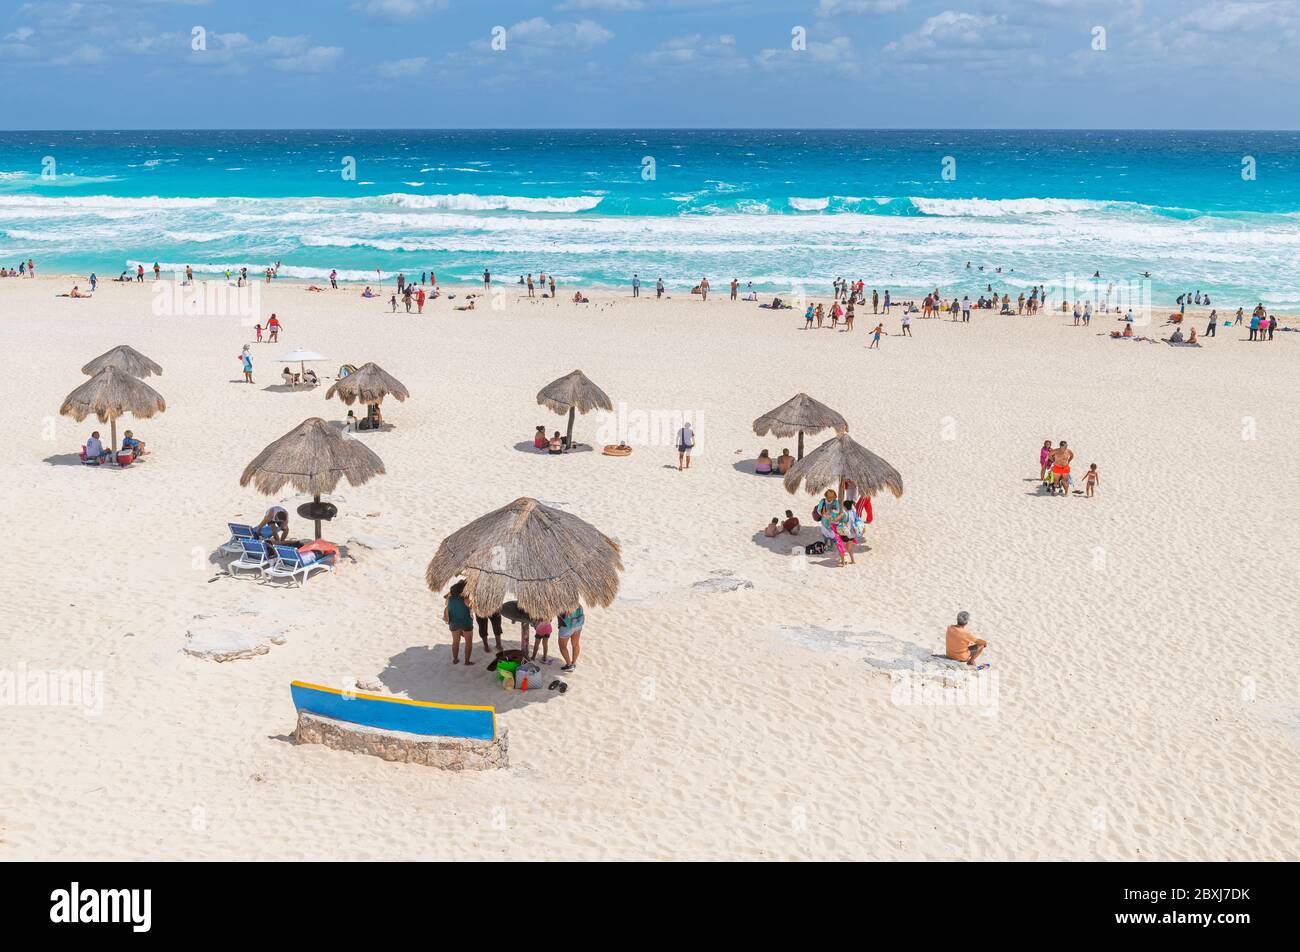 Touristes et Mexicains sur Playa Delfines sous des parasols en roseau près de la mer des Caraïbes, Cancun, péninsule du Yucatan, Mexique. Banque D'Images